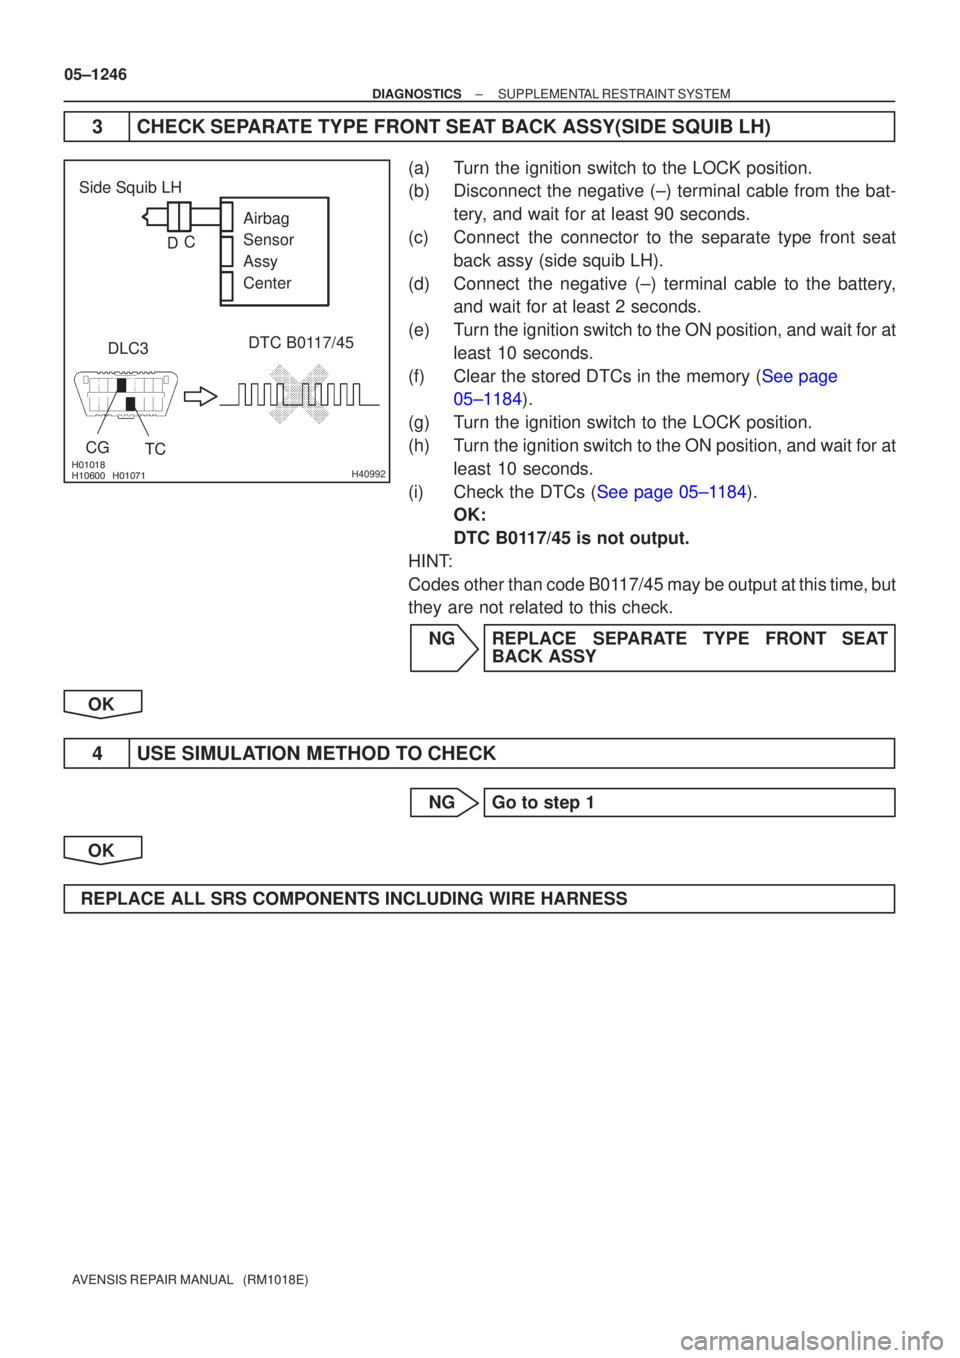 TOYOTA AVENSIS 2005  Service Repair Manual 
 H40992
TC
Side Squib LH
DTC B0117/45
DLC3
CG Airbag 
Sensor 
Assy
Center
C
D
05±1246
±
DIAGNOSTICS SUPPLEMENTAL RESTRAINT SYSTEM
AVENSIS REPAIR MANUAL   (RM1018E)
3 CHECK SEPARAT